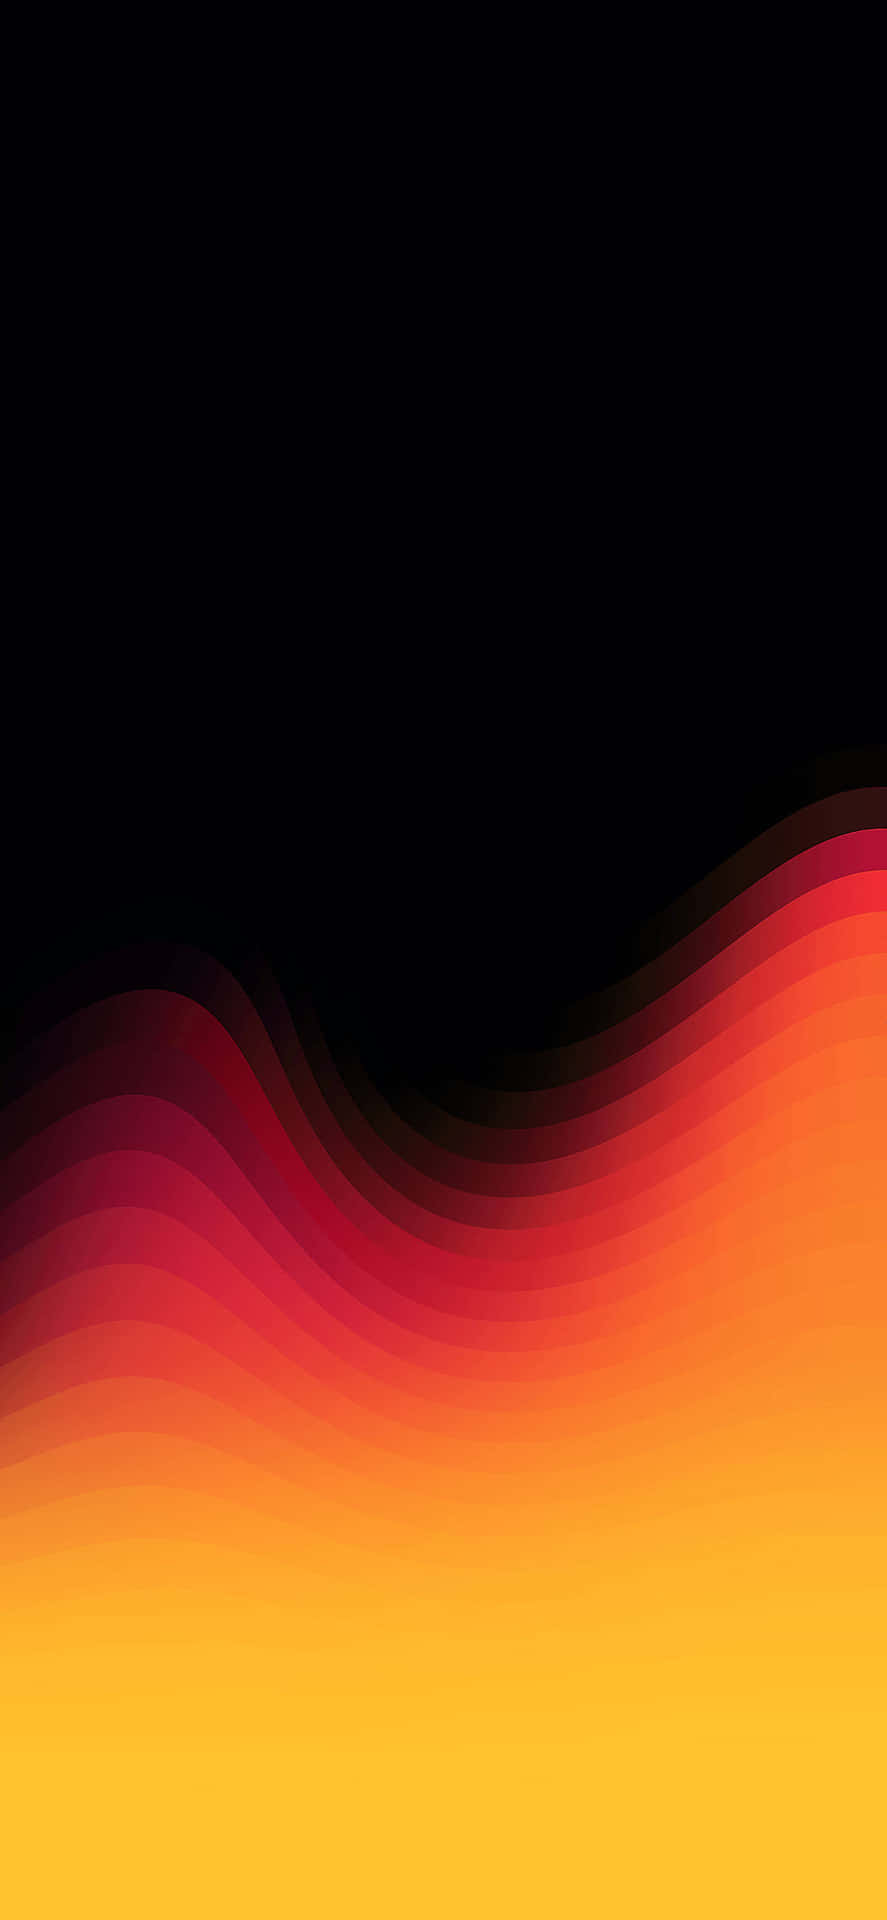 IPhones XS Max Fire Color Gradient Wallpaper